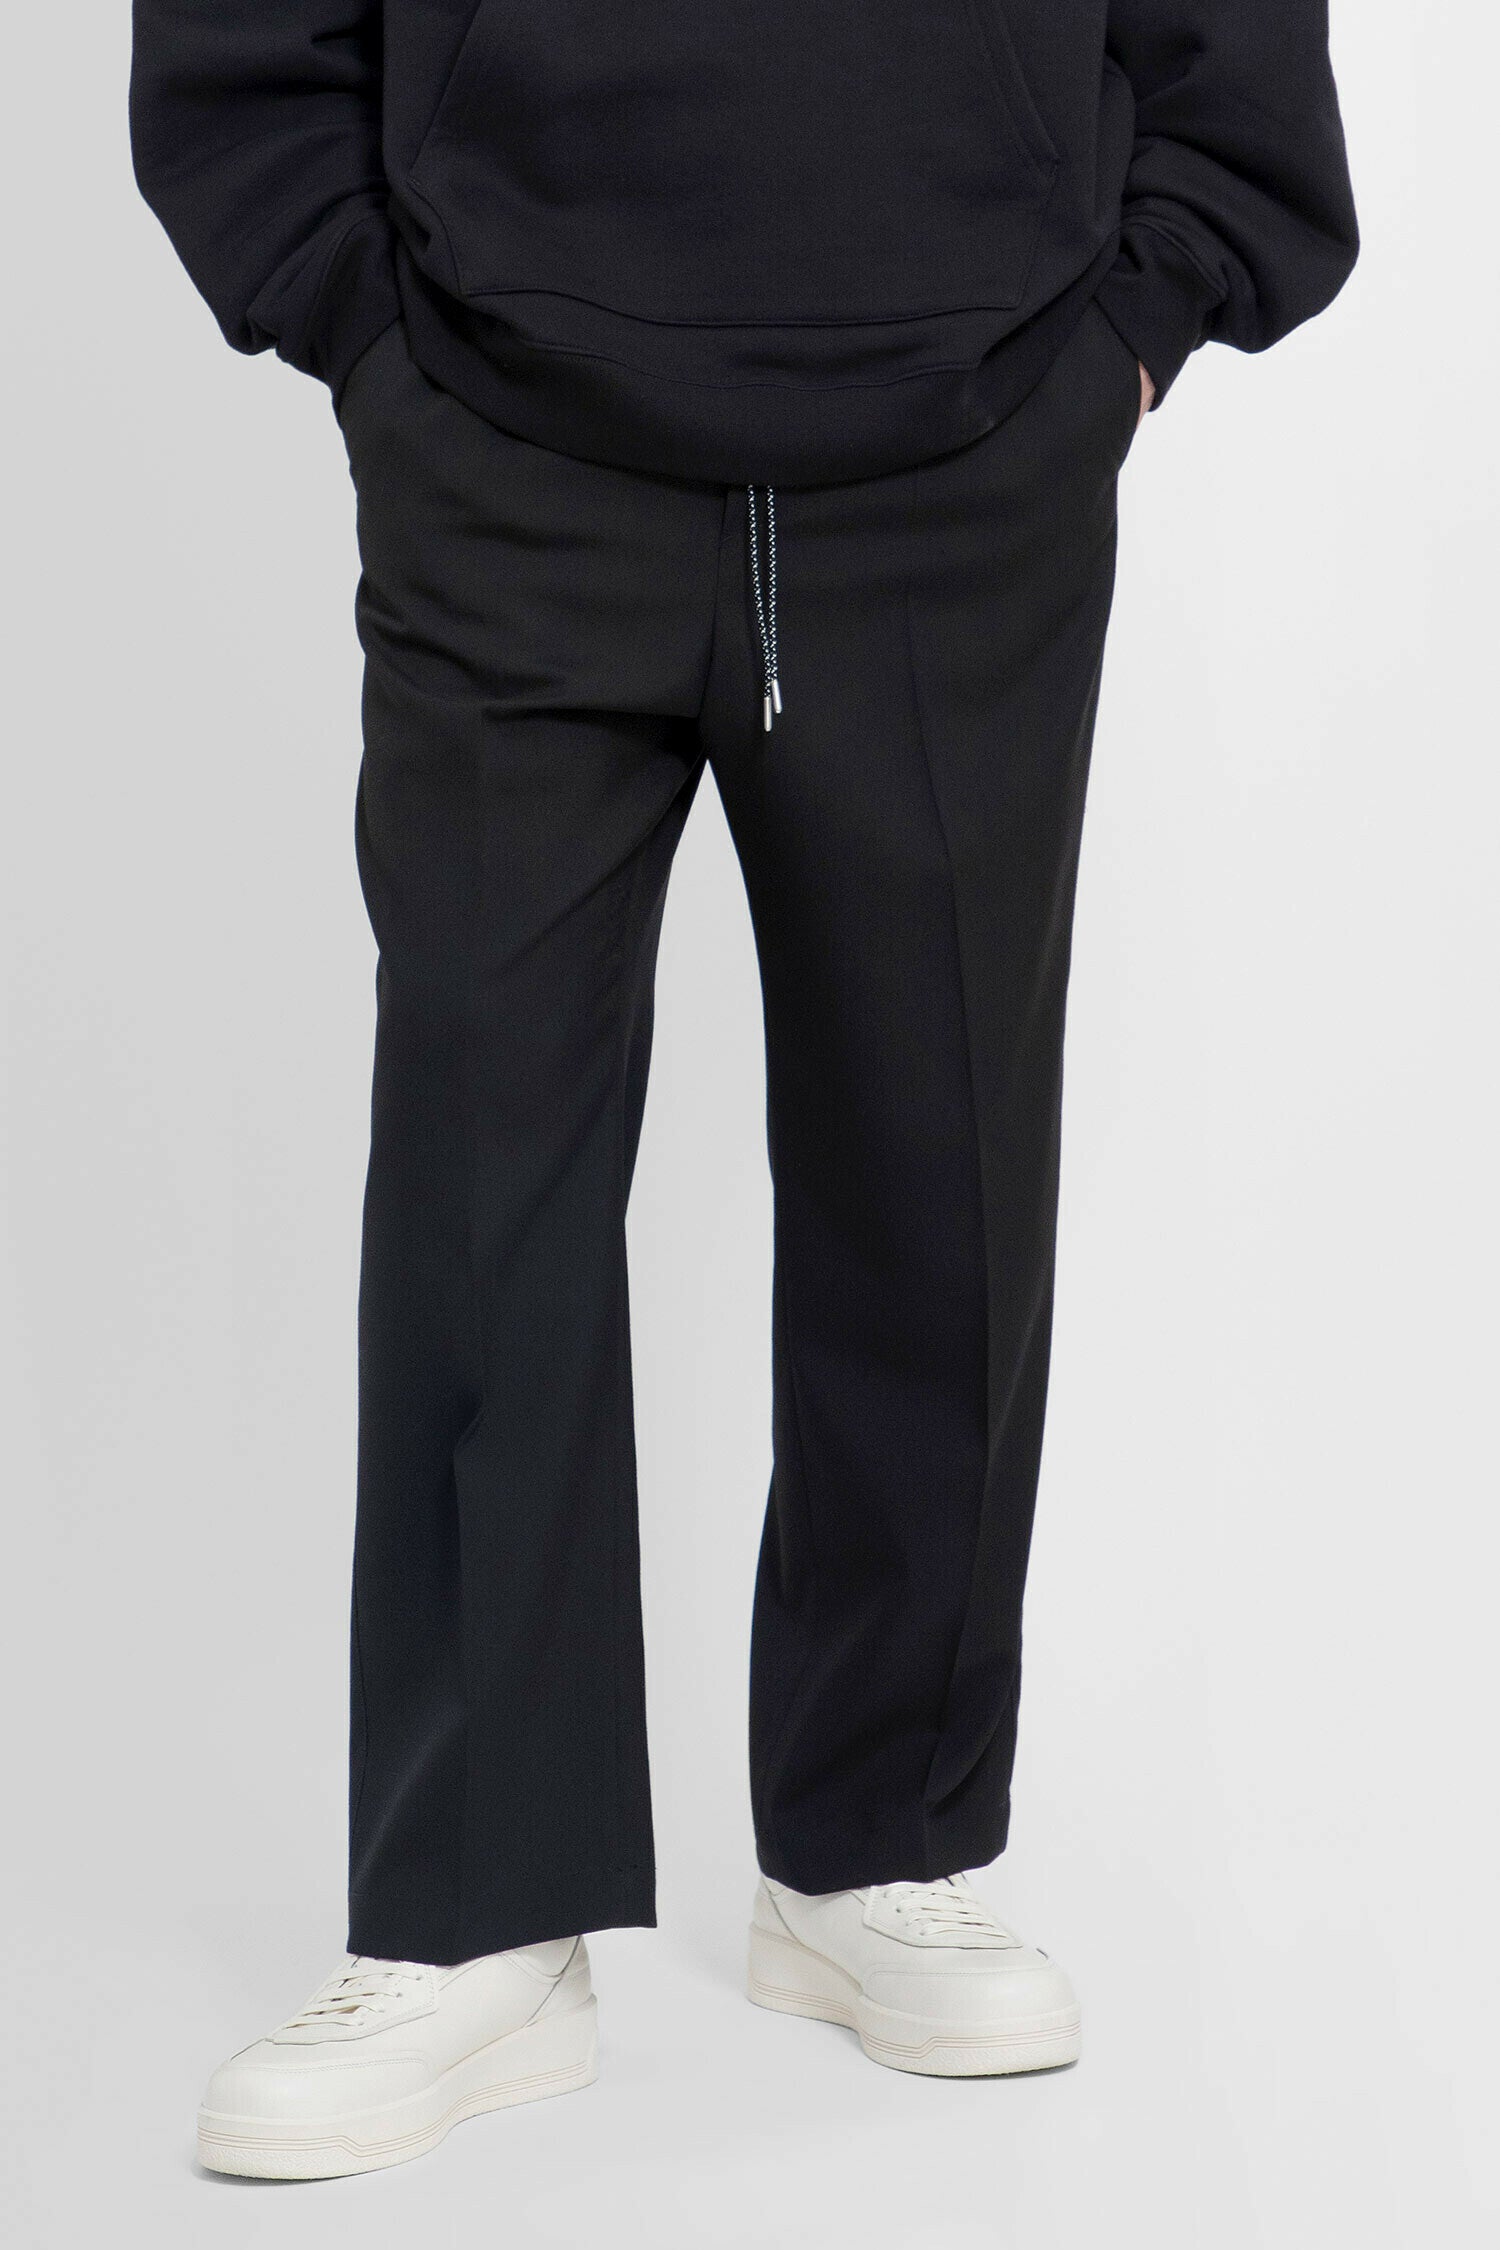 【低価得価】ロンハーマンOAMC Drawcord Cotton Pants パンツ